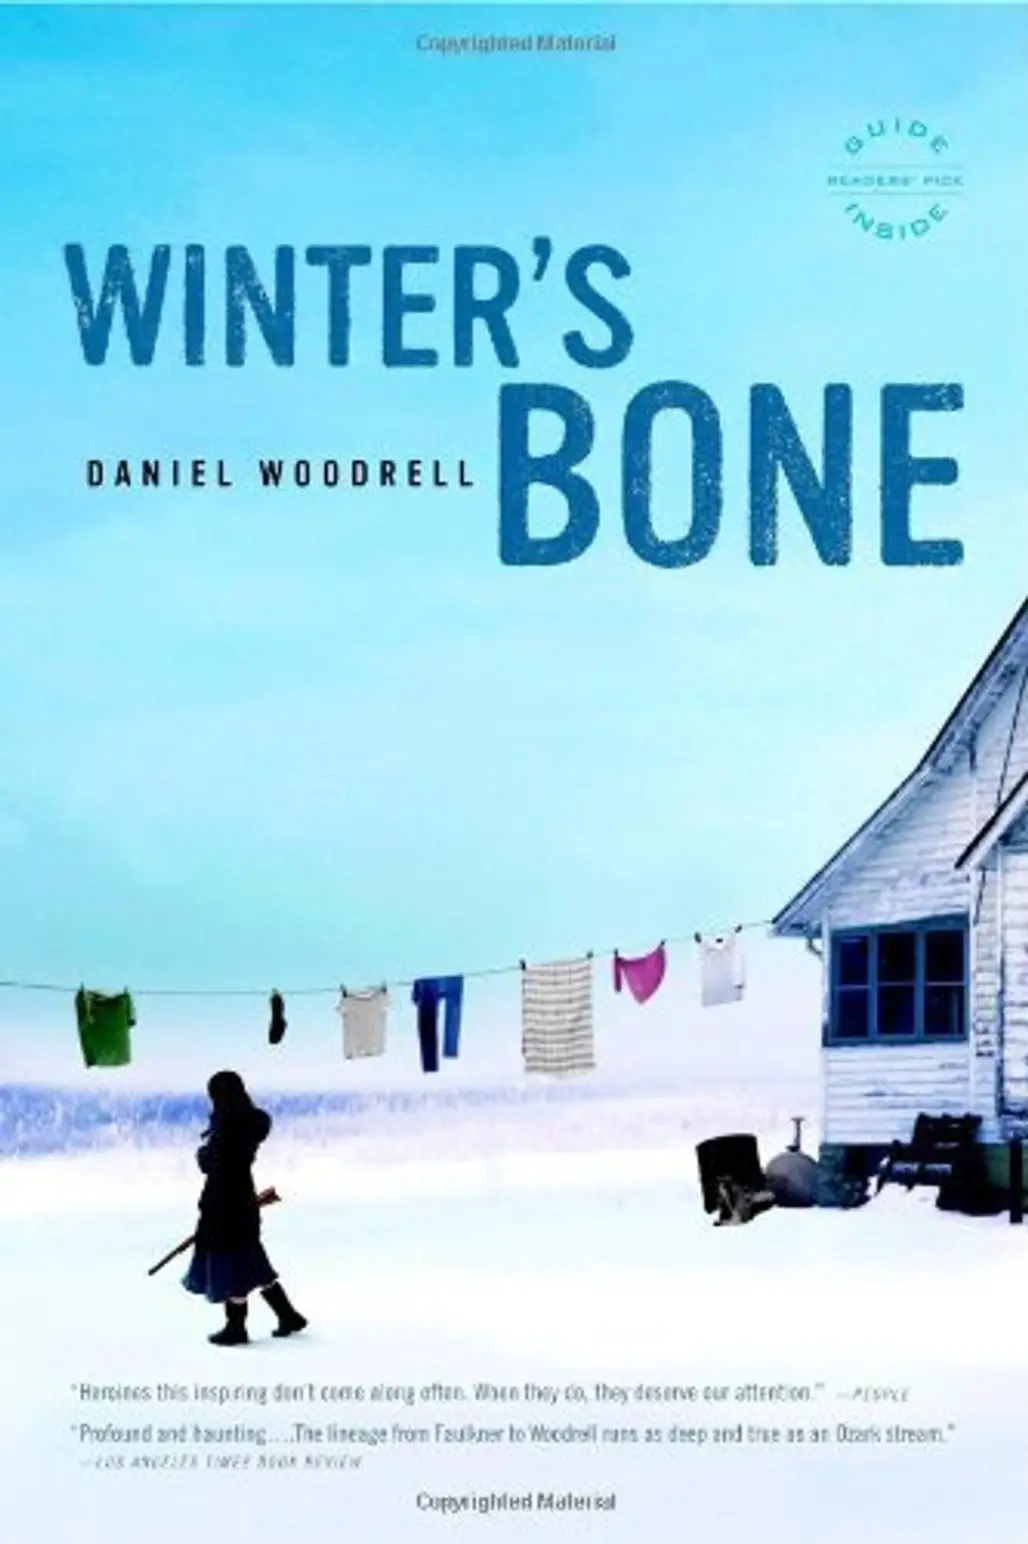 Winter’s Bone by Daniel Woodrell